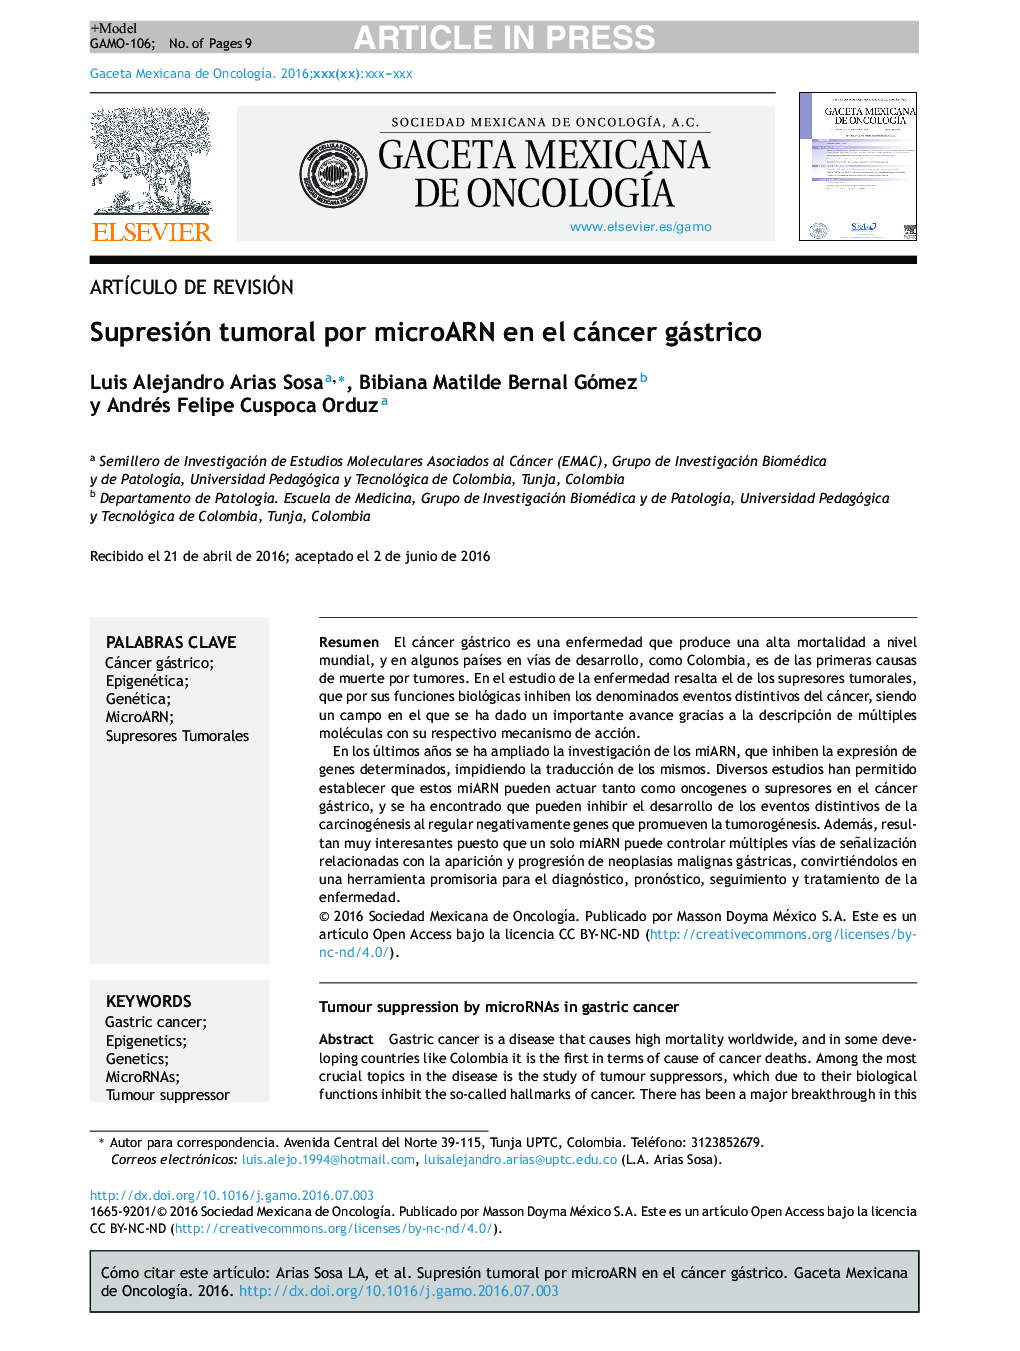 Supresión tumoral por microARN en el cáncer gástrico